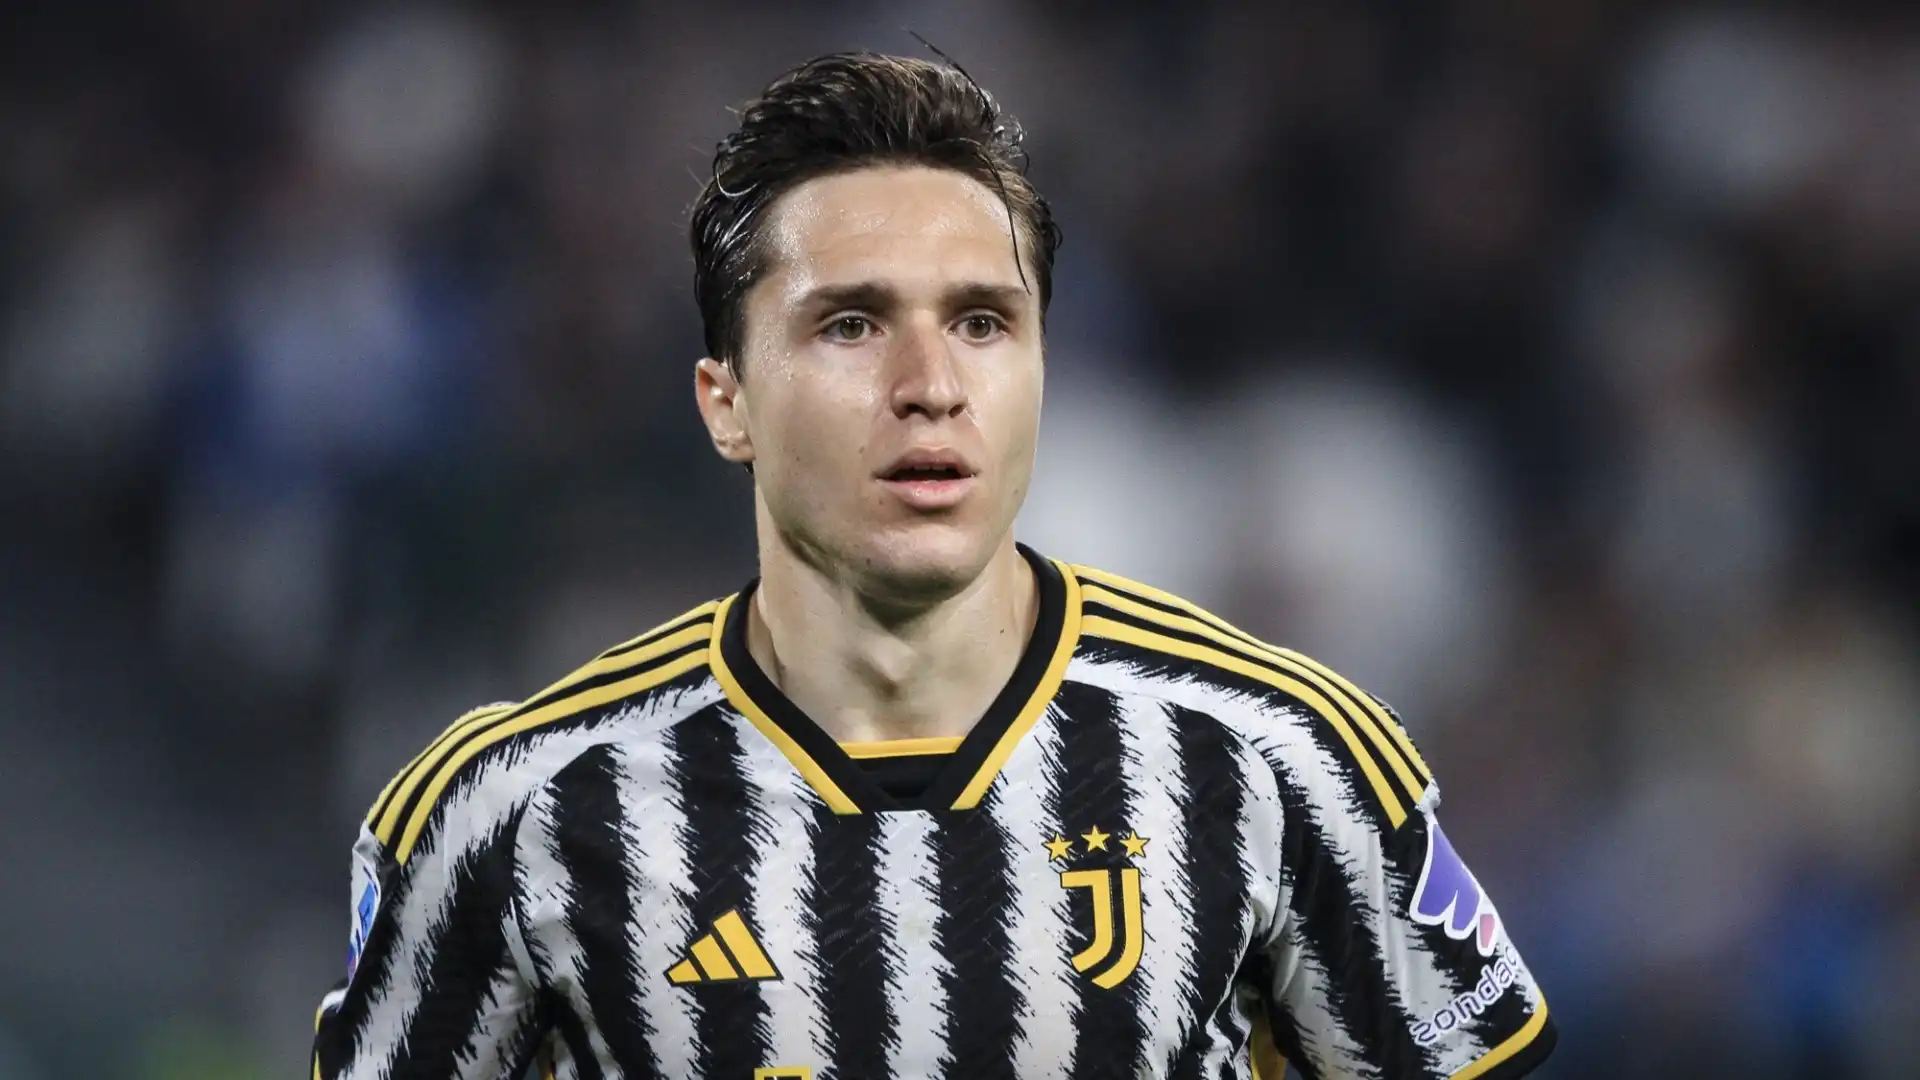 L'attaccante della Juventus è in scadenza di contratto nel 2025, e le parti sono molto distanti